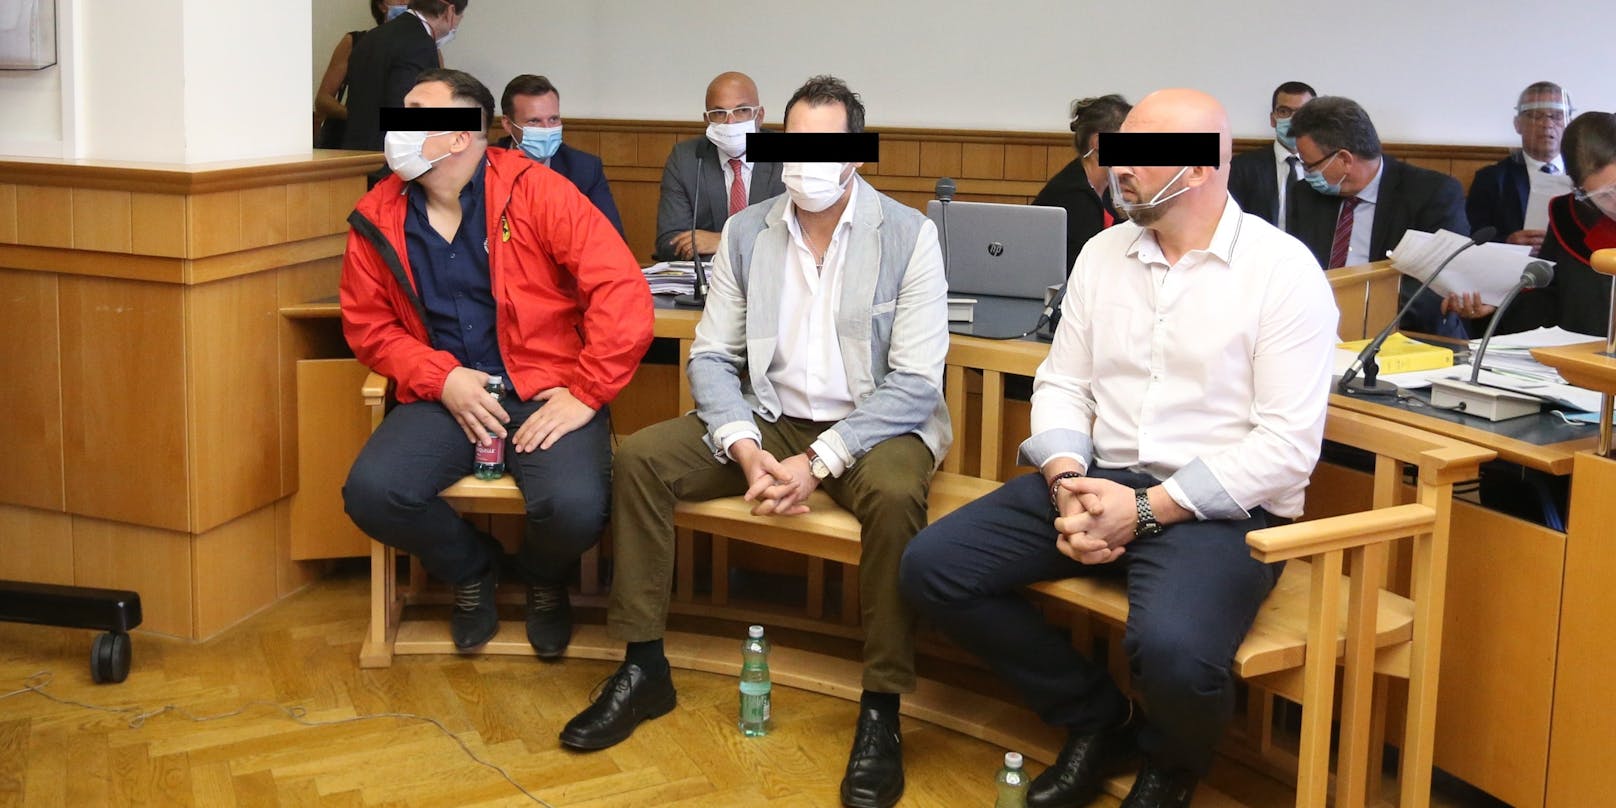 Drei der insgesamt sieben Angeklagten im schwierigen Fall.